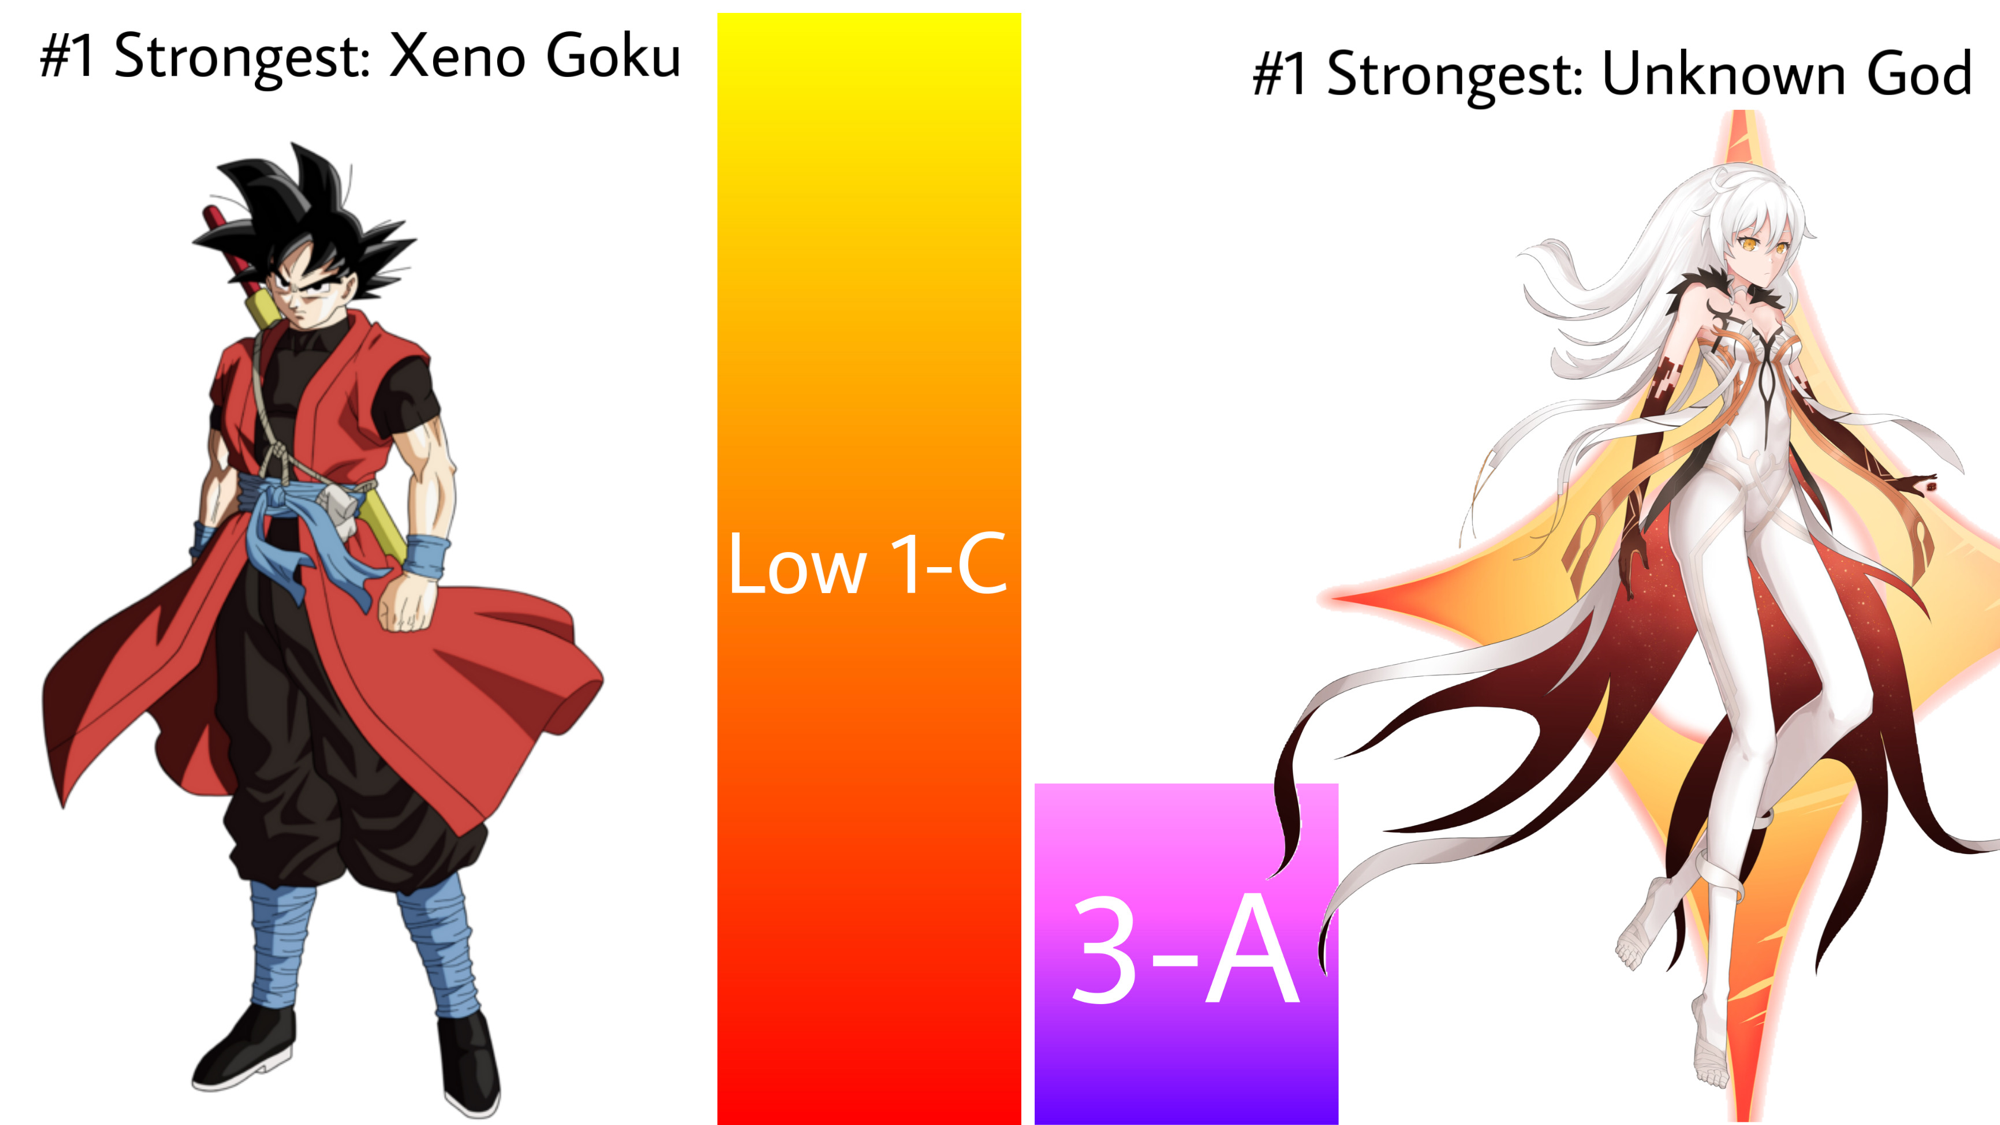 Where do you scale Xeno Goku? - Quora